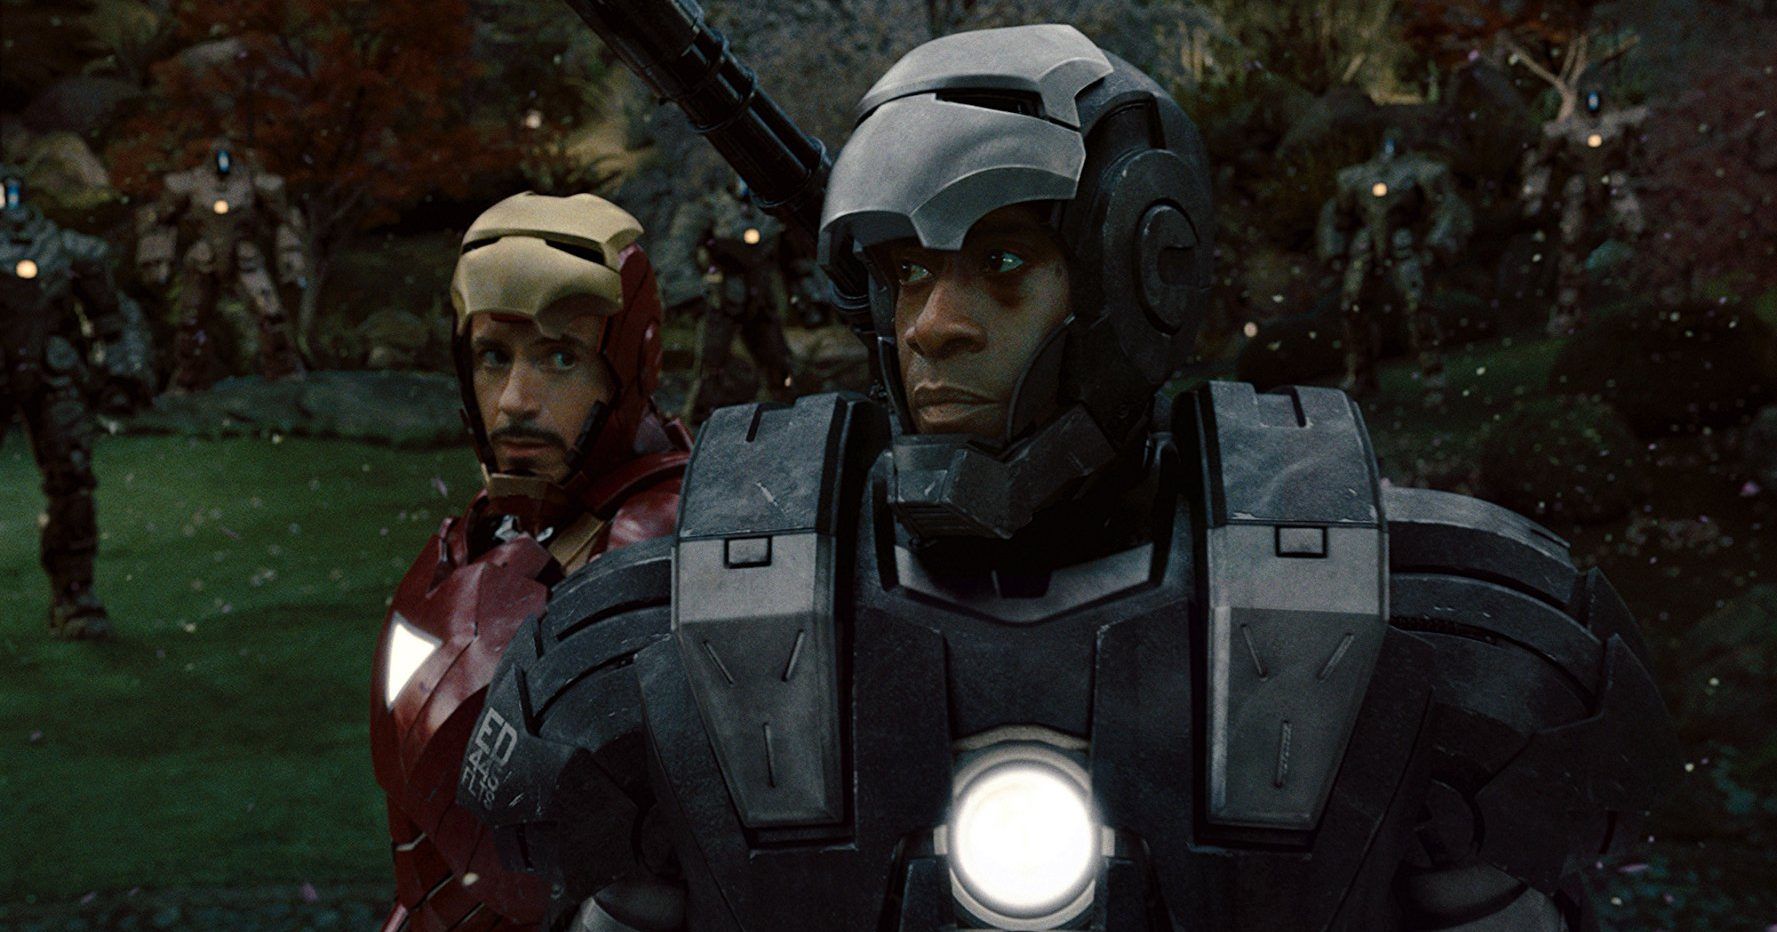 Rhodey in Iron Man 2